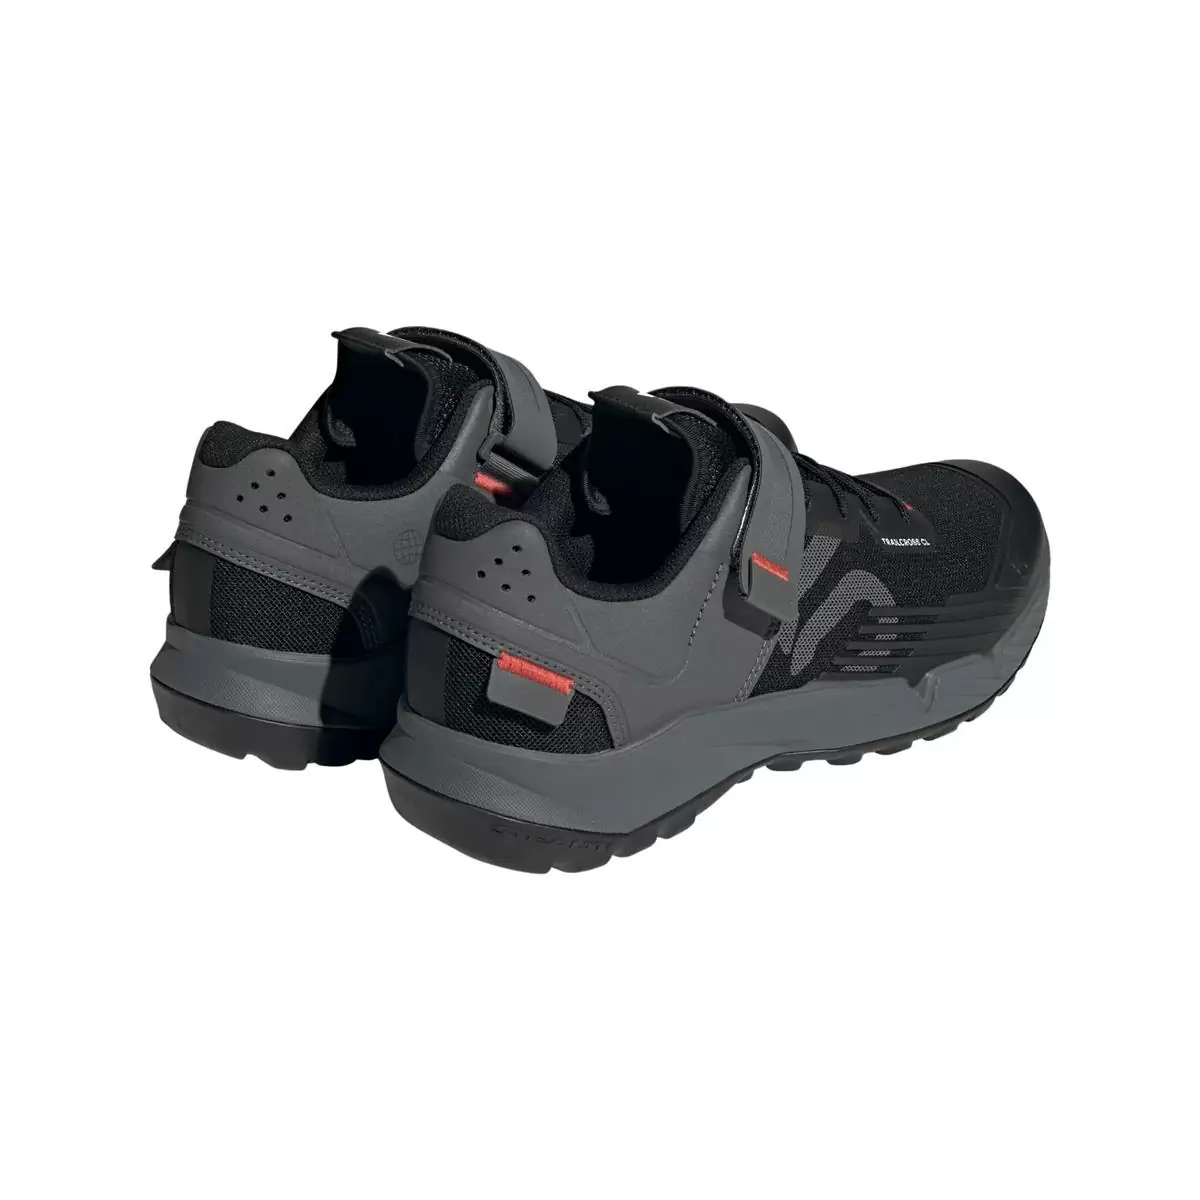 Clip 5.10 Trailcross MTB Shoes Black/Grey Size 41.5 #5